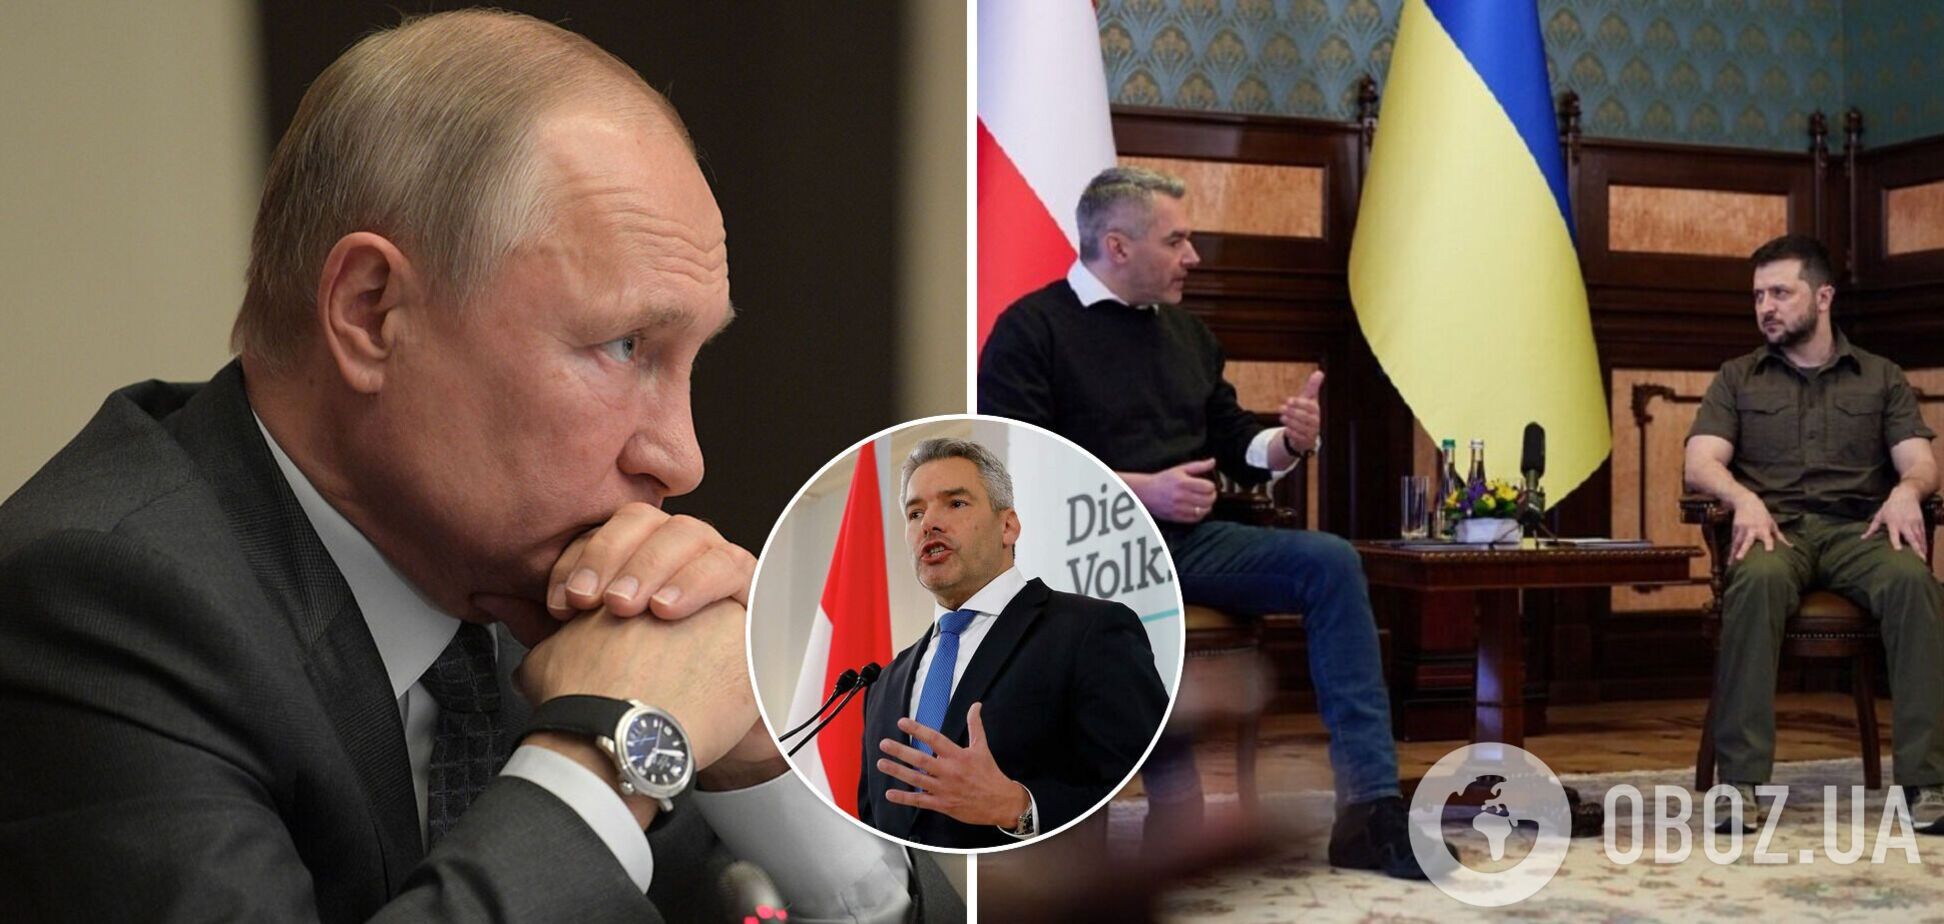 Карл Нехаммер планирует личную встречу с Владимиром Путиным